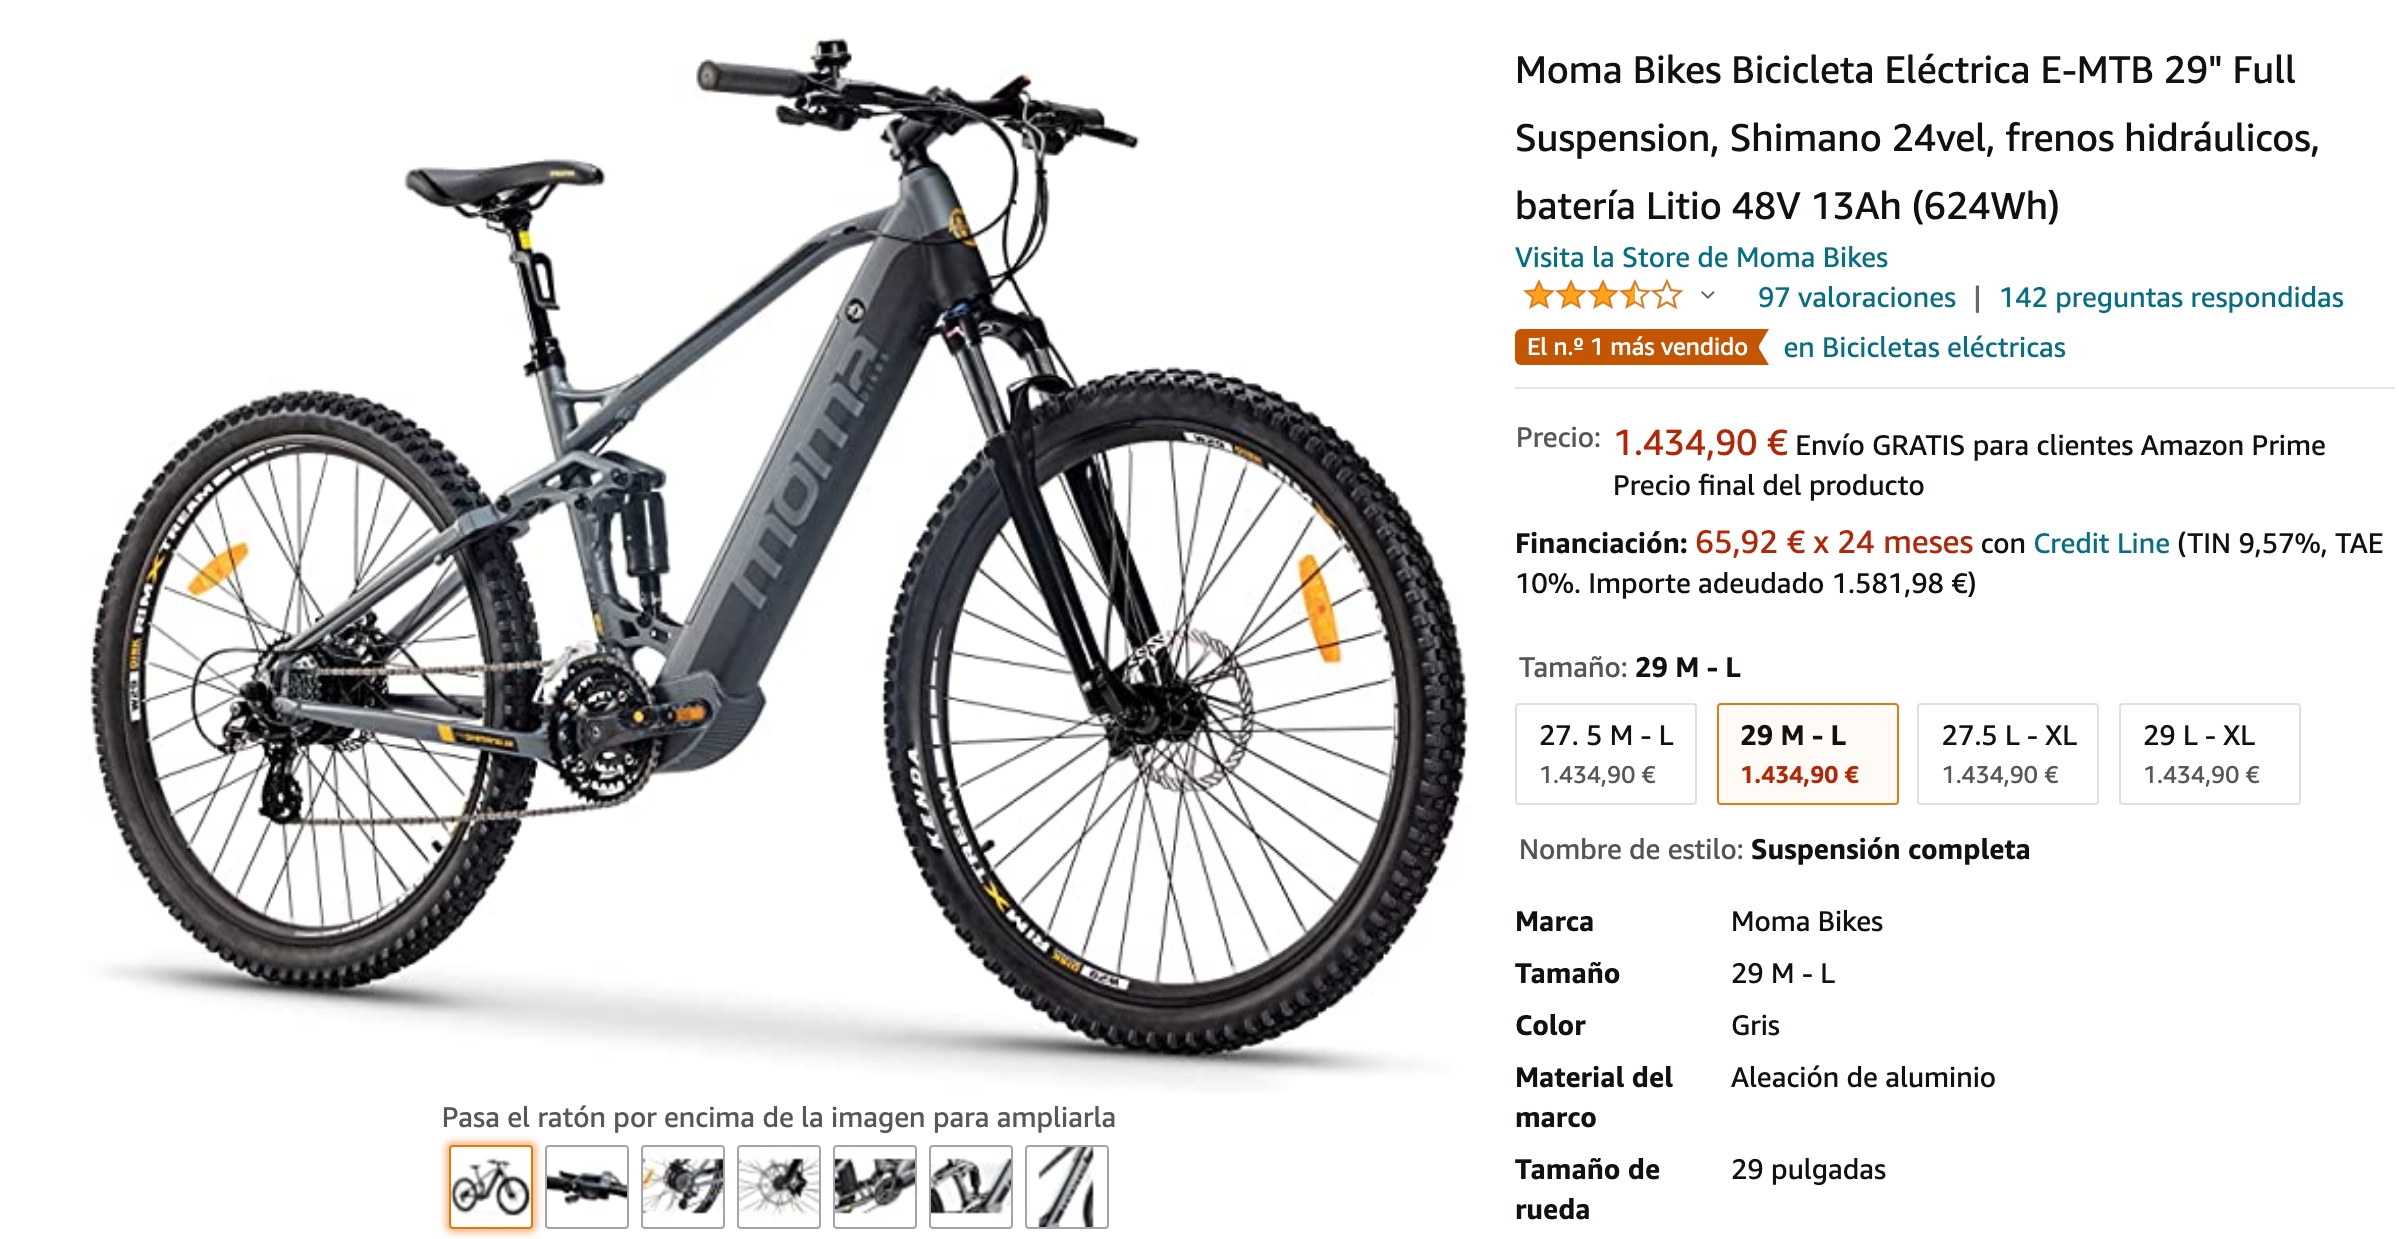 La Moma E-MTB 29 es, según Amazon, su bicicleta eléctrica más vendida